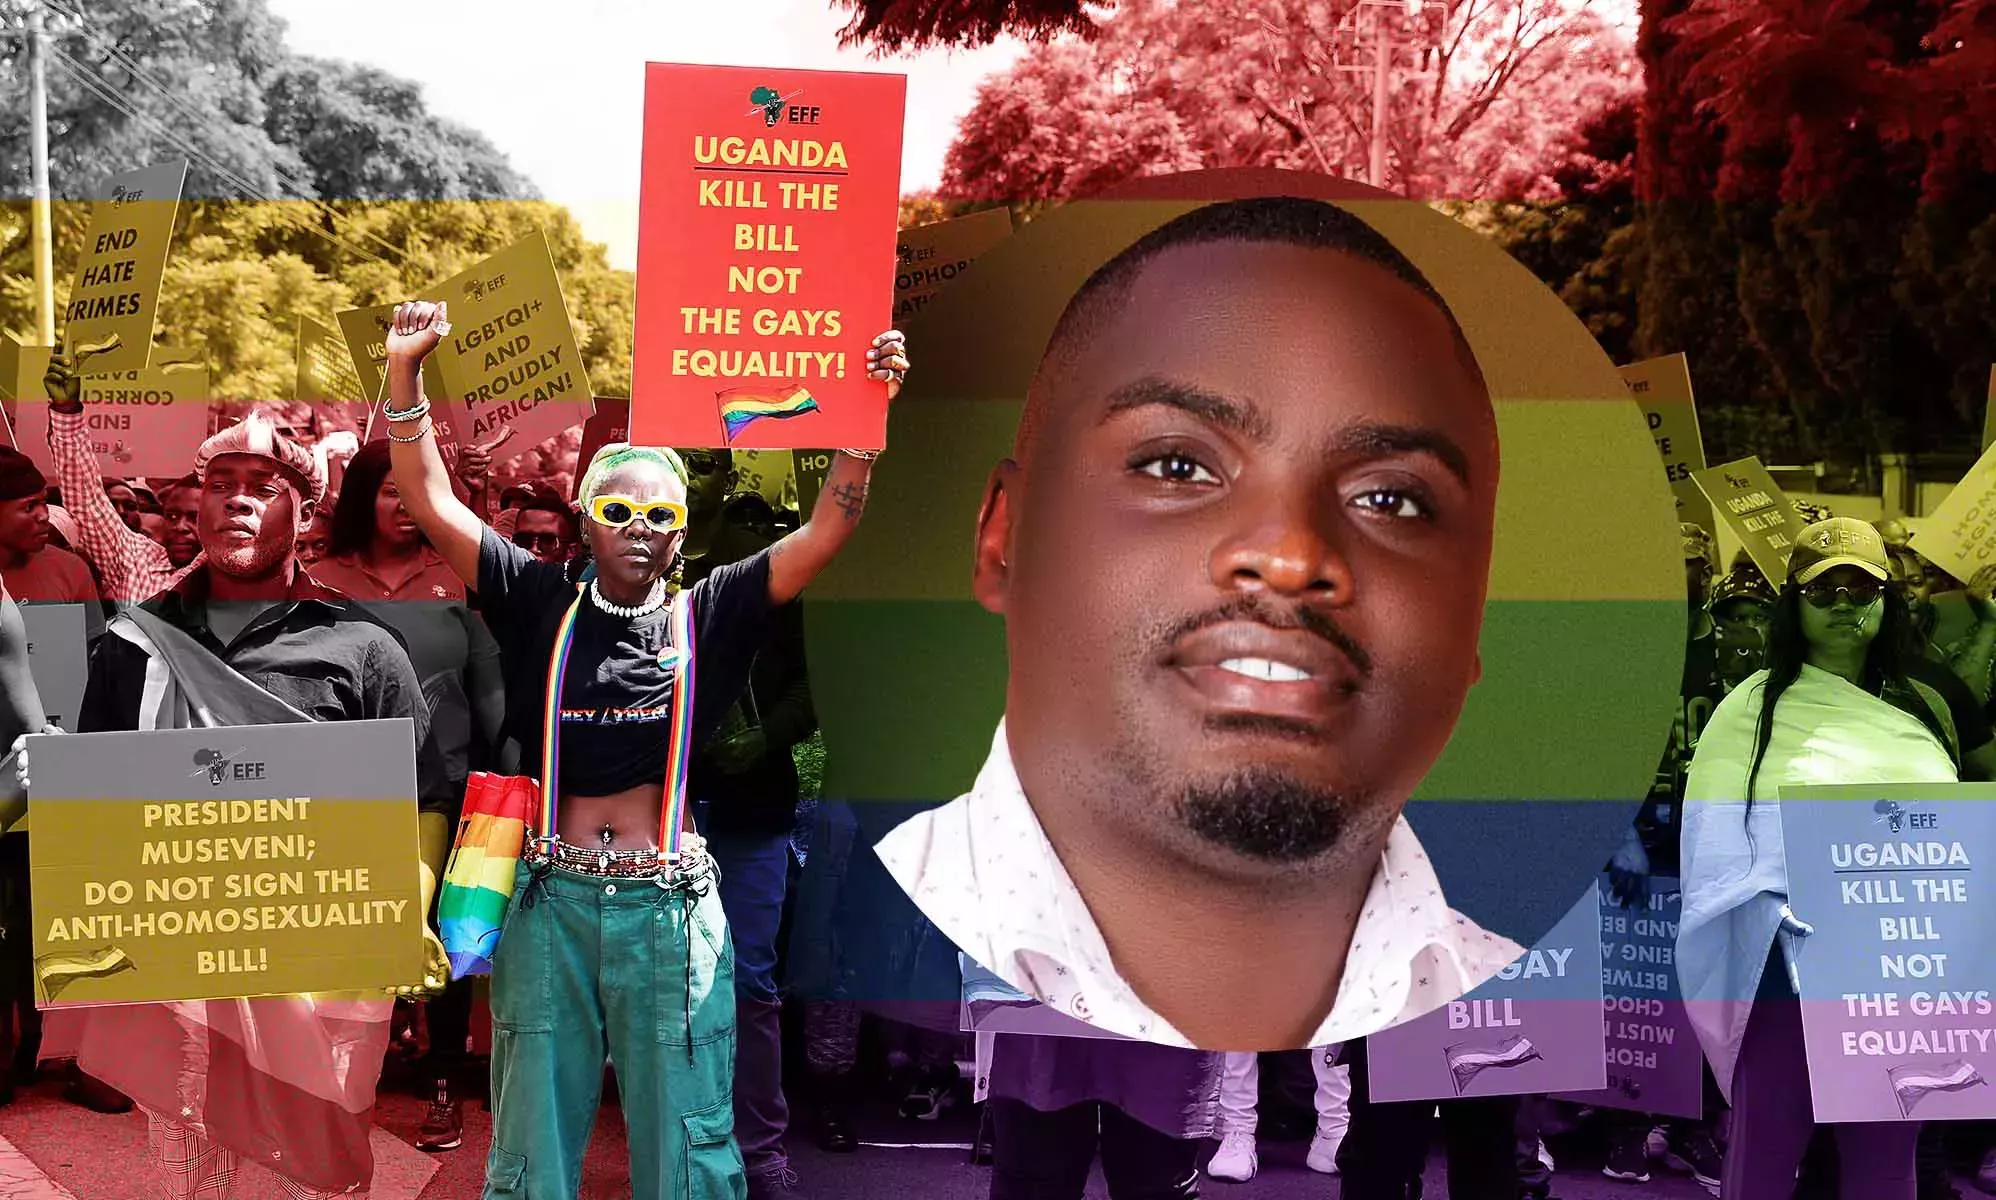 ¿Qué dejo atrás? Hablan los ugandeses homosexuales que huyen de la ley contra la homosexualidad